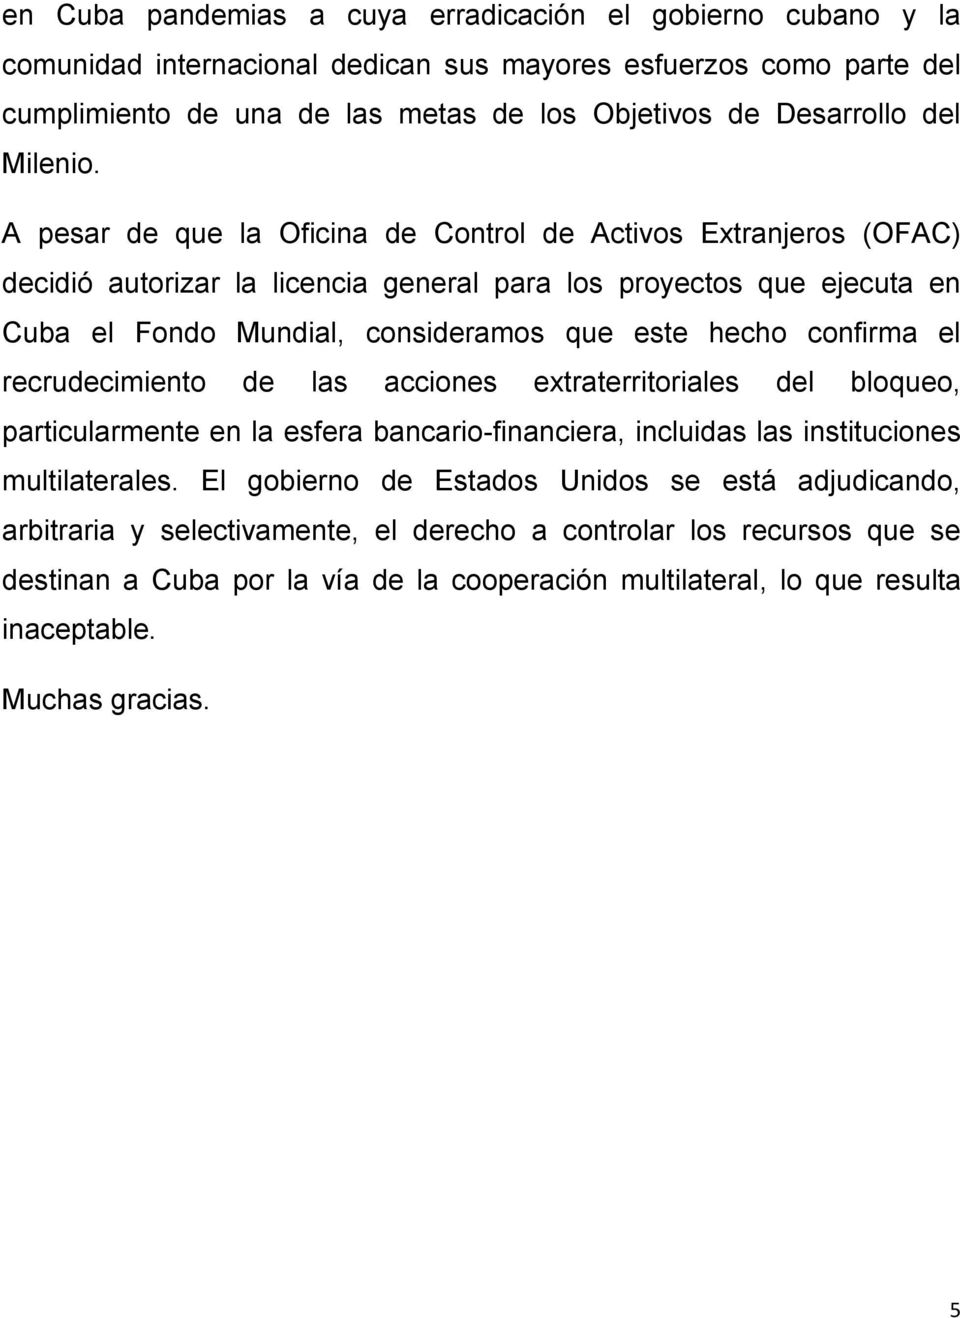 A pesar de que la Oficina de Control de Activos Extranjeros (OFAC) decidió autorizar la licencia general para los proyectos que ejecuta en Cuba el Fondo Mundial, consideramos que este hecho confirma